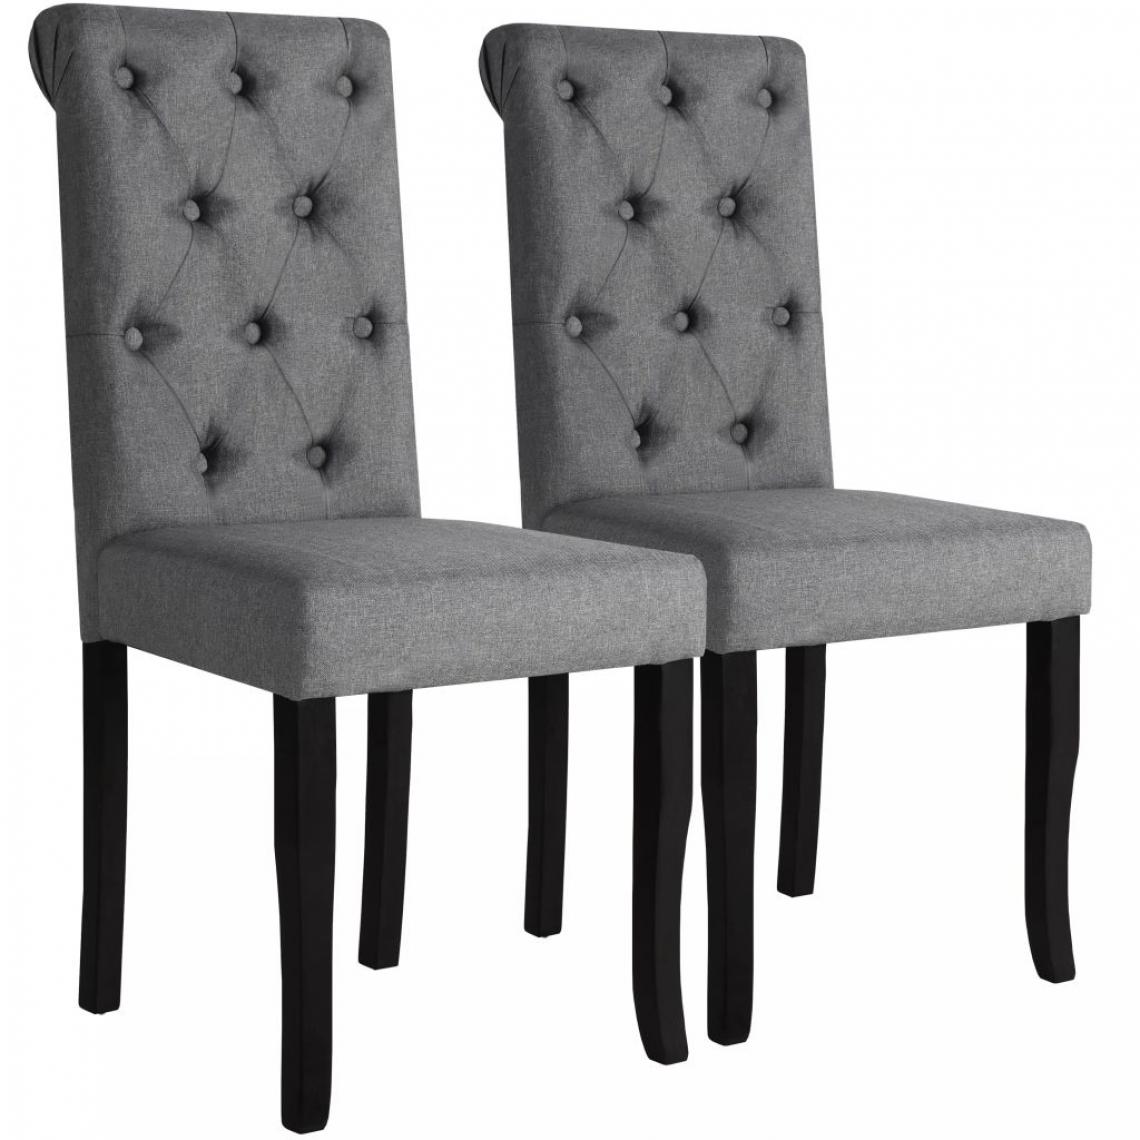 Decoshop26 - Lot de 2 chaises de salle à manger cuisine dossier capitonné en tissu gris foncé CDS020532 - Chaises